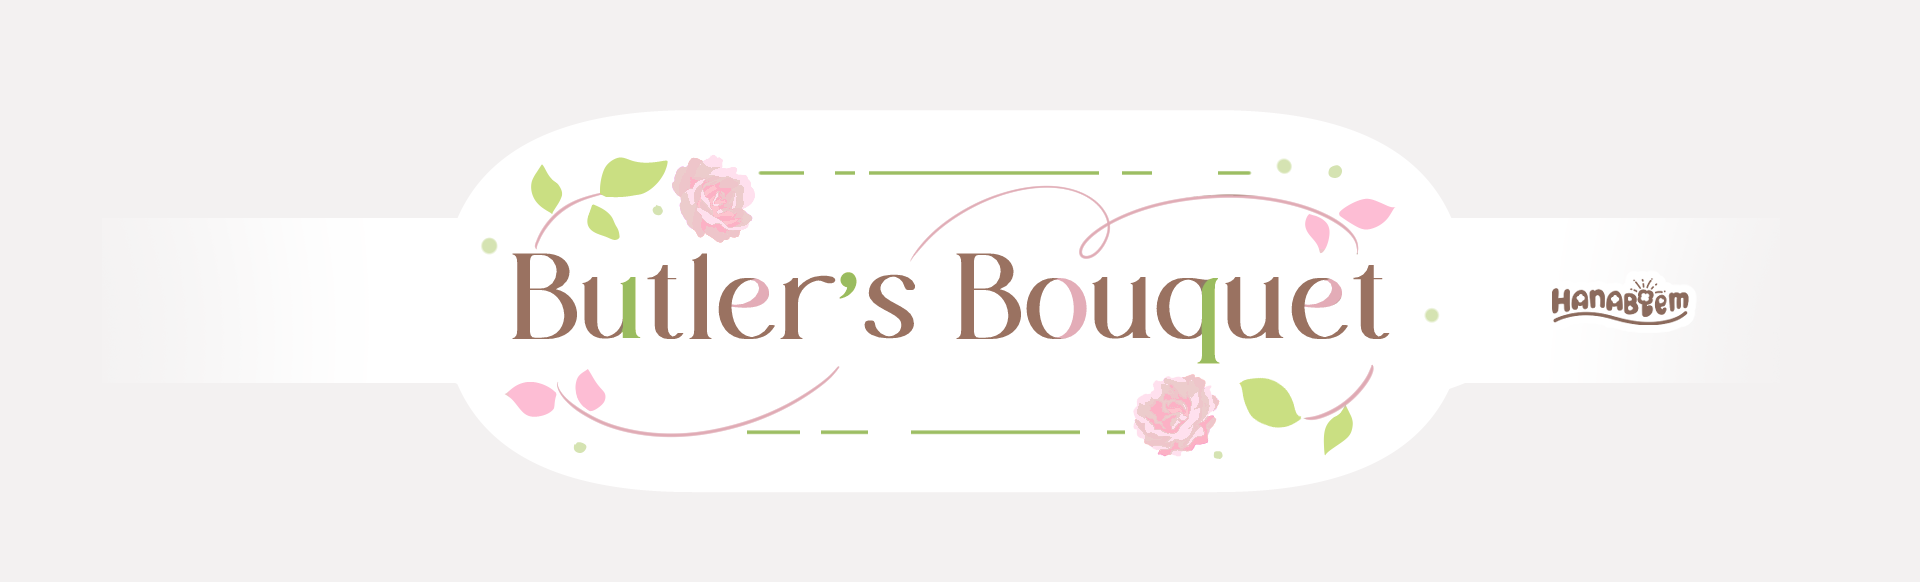 Butler's Bouquet